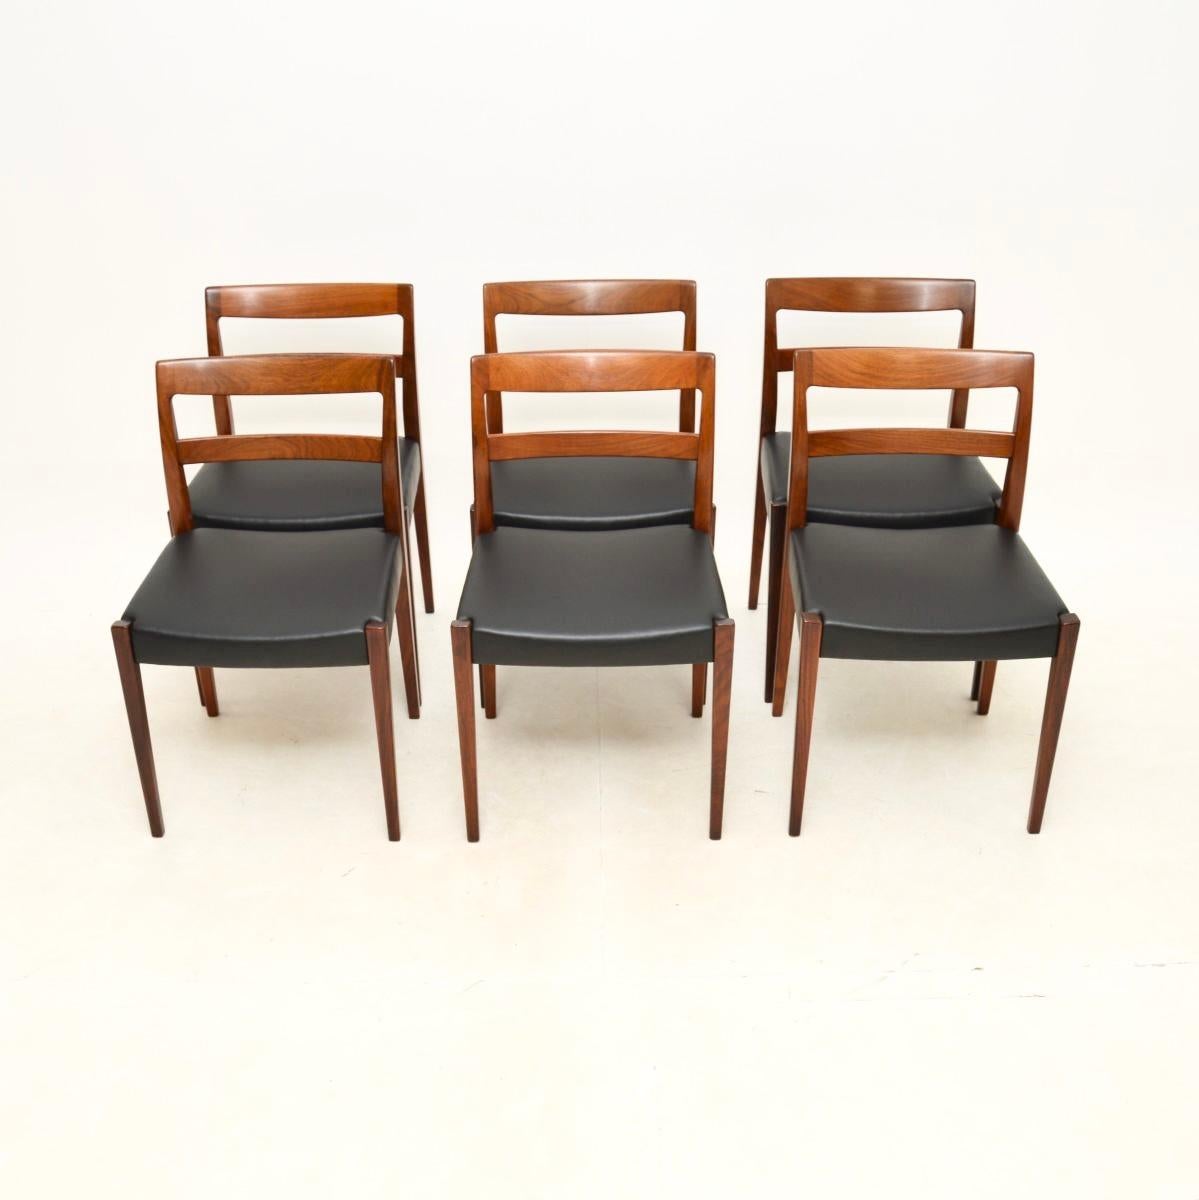 Ein fantastischer Satz von sechs Vintage-Esszimmerstühlen von Nils Jonsson. Sie wurden in Schweden hergestellt und stammen aus den 1960er Jahren.

Die Qualität ist hervorragend, die Rahmen sind fein modelliert, stabil und gut gebaut. Es hat einen